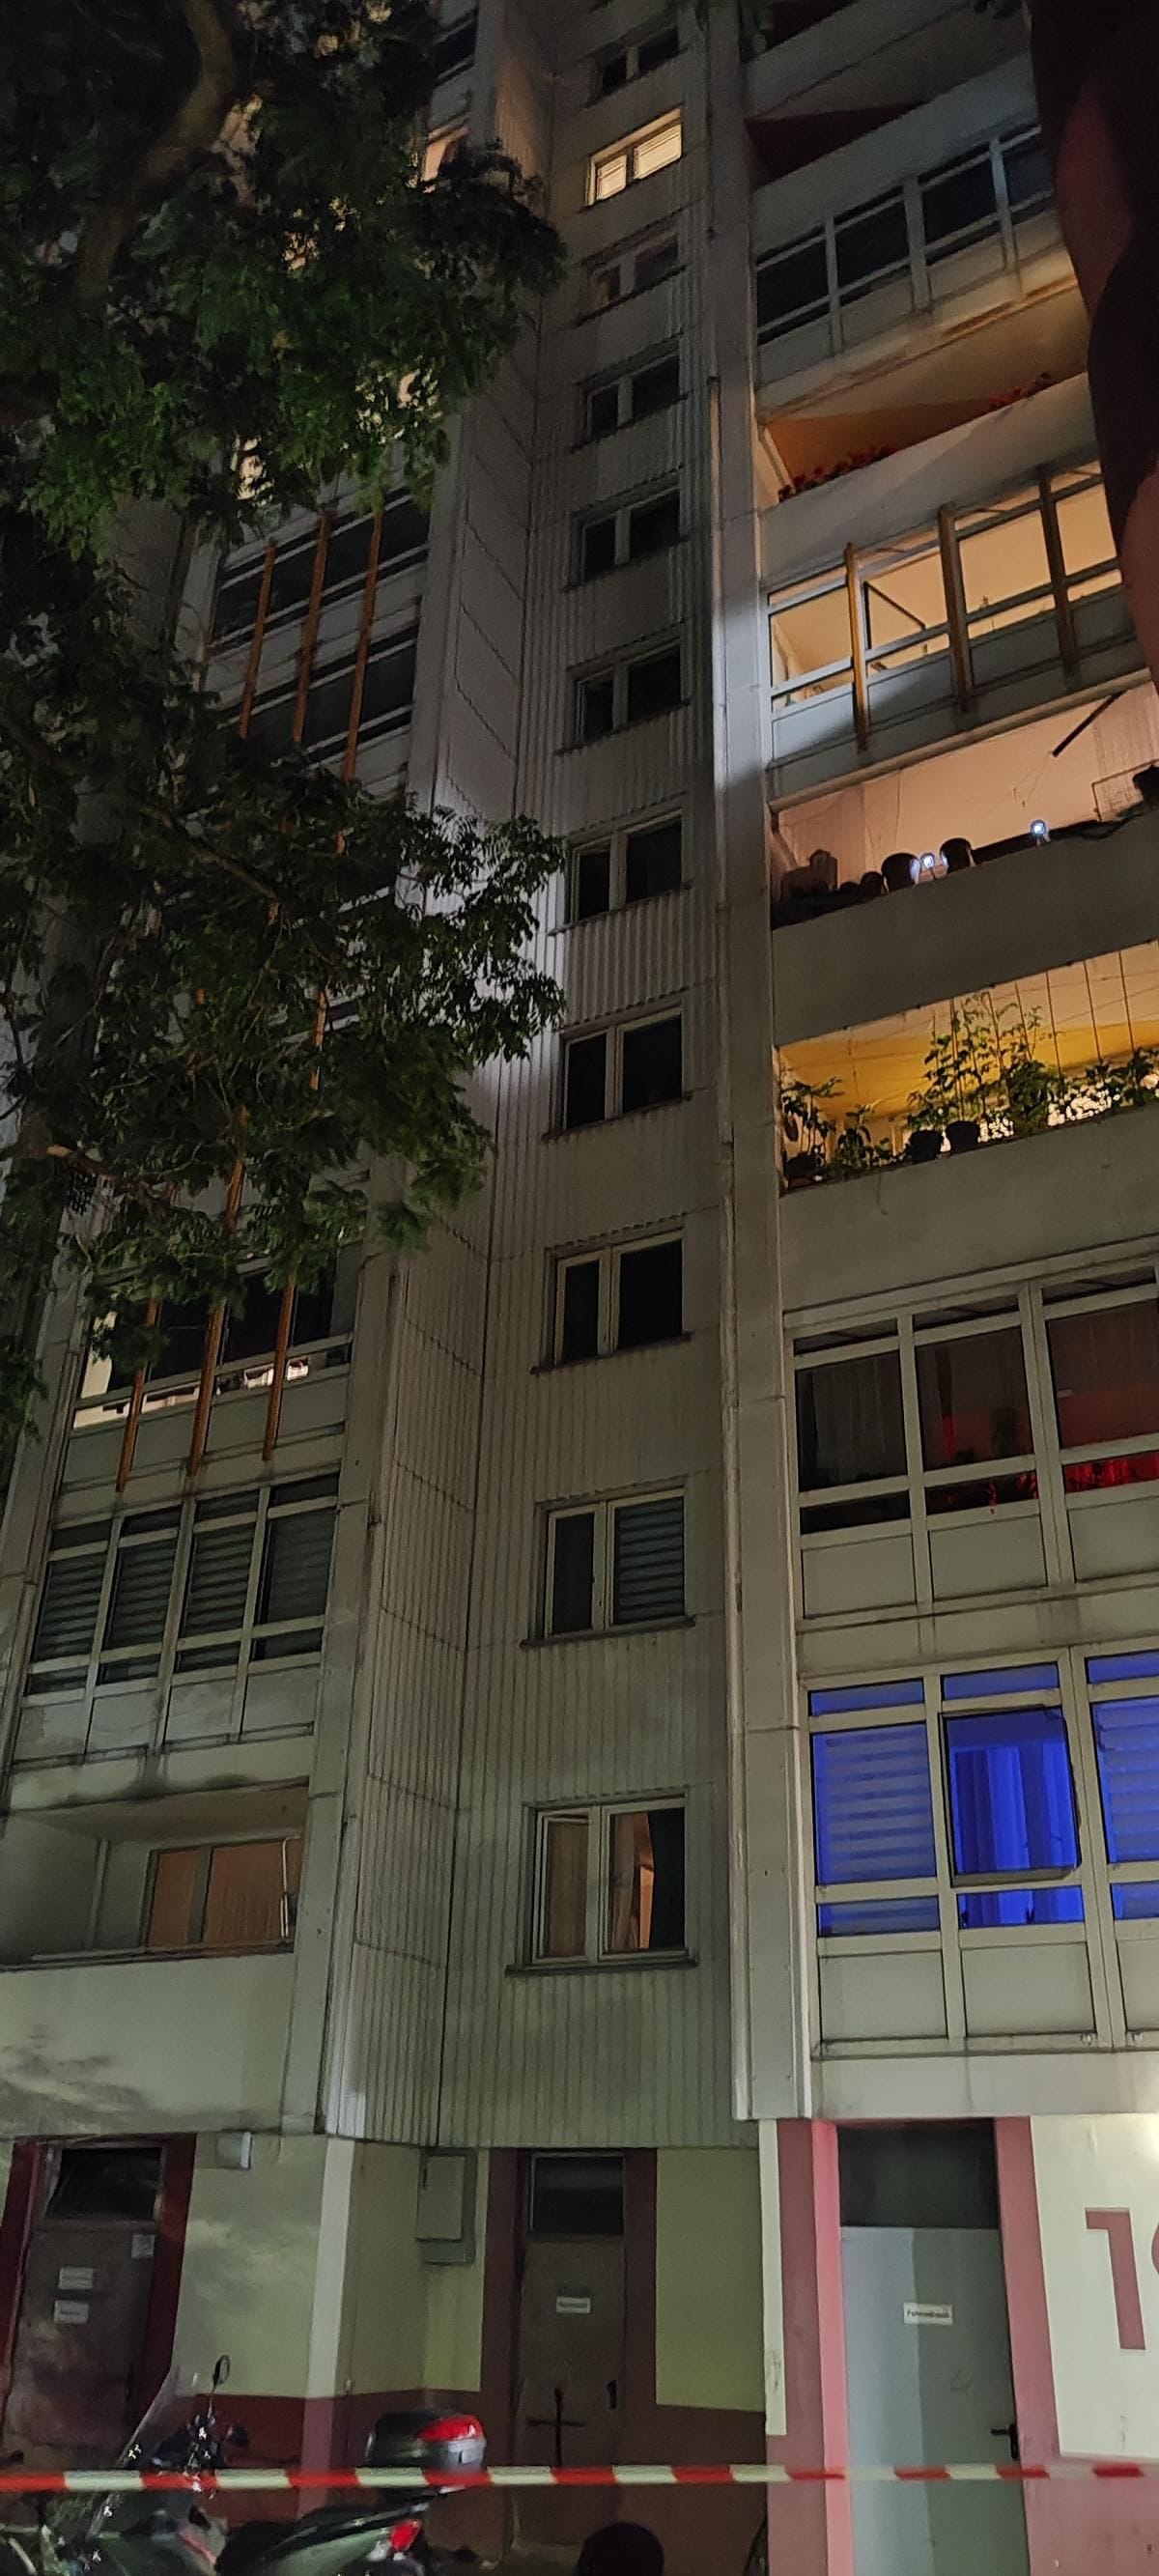 Laut einem Reporter viel das Kind aus dem Fenster im 9. Stock, wo ein Licht brennt.